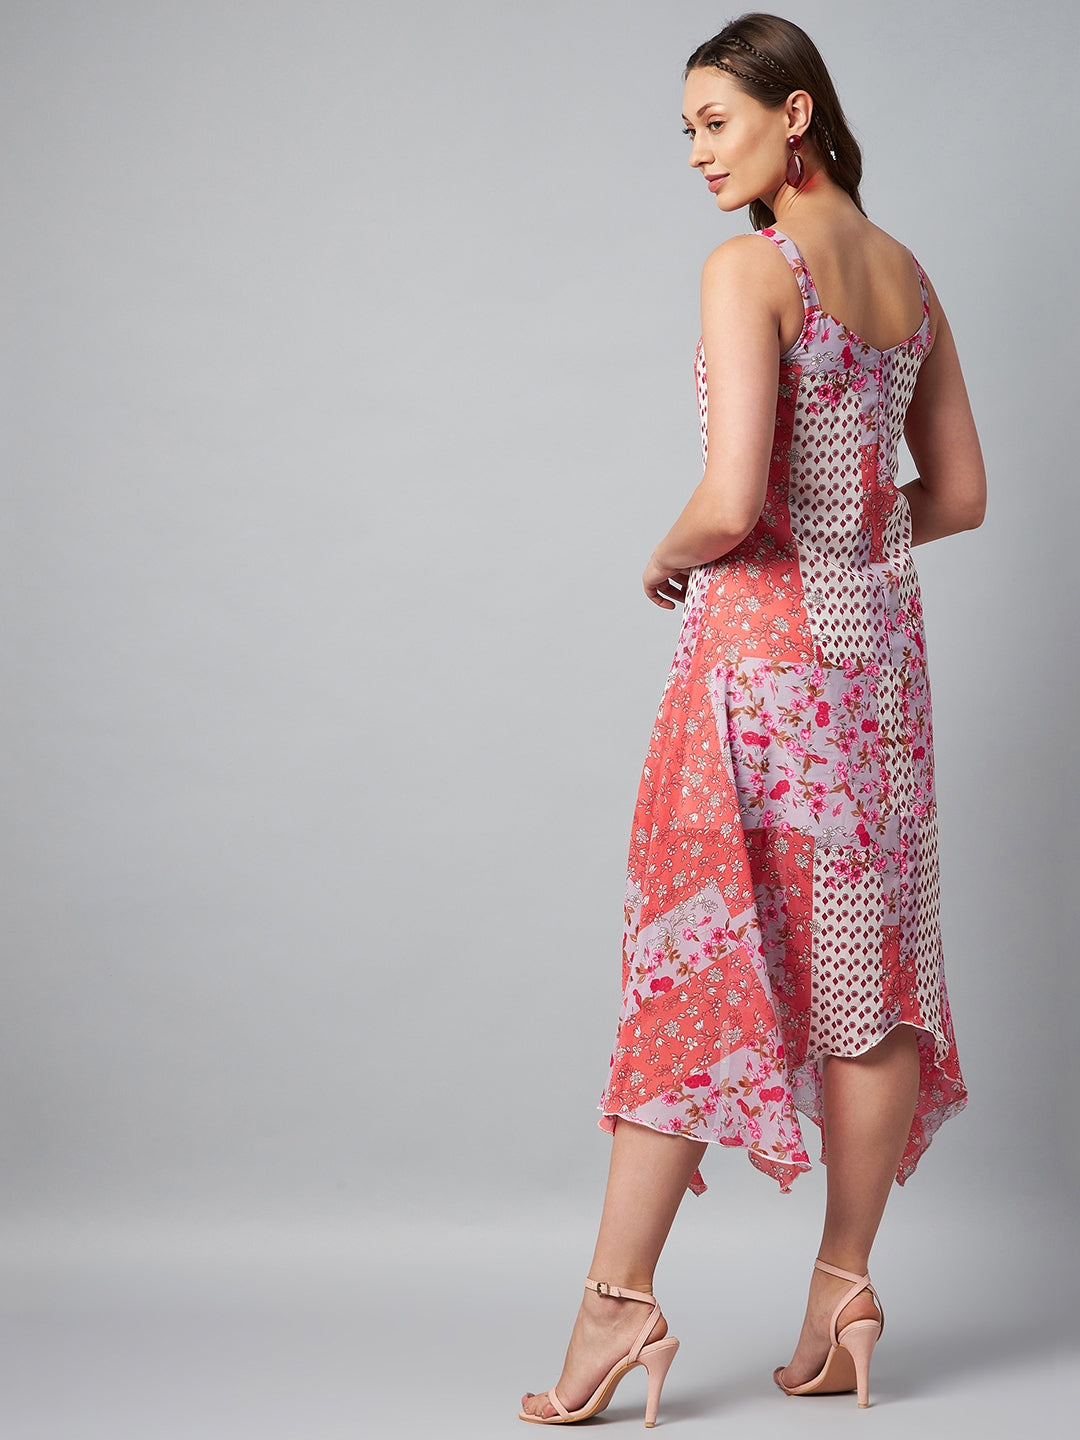 Women's Asymmetric Pink Tile Print Dress